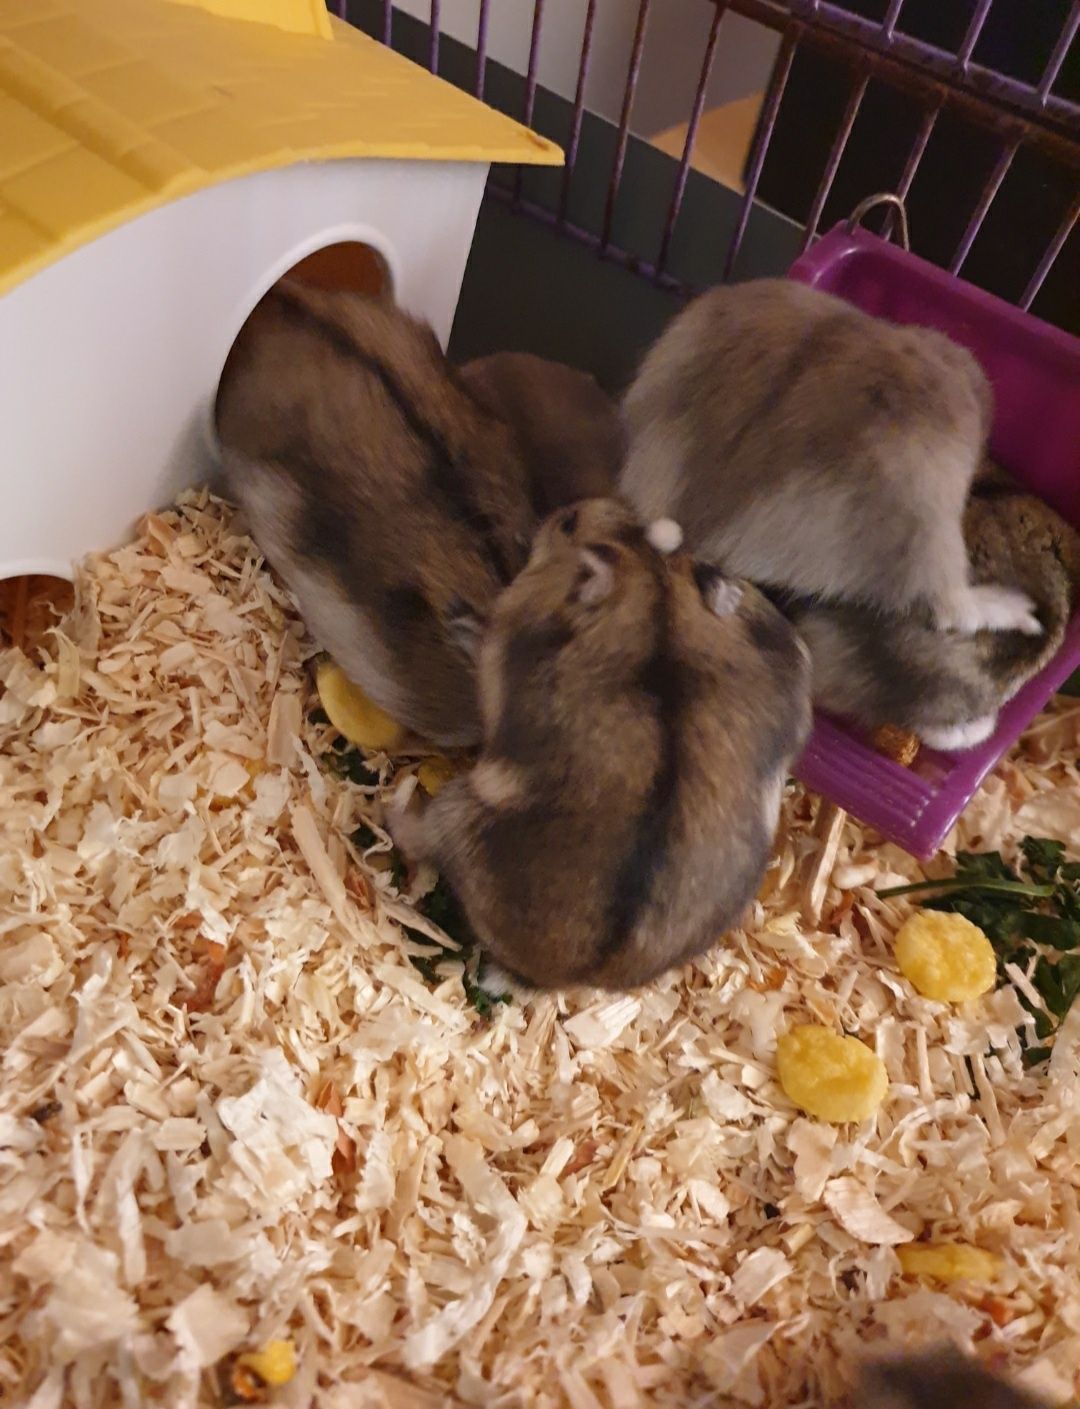 Hamsteri mici și drăgălași